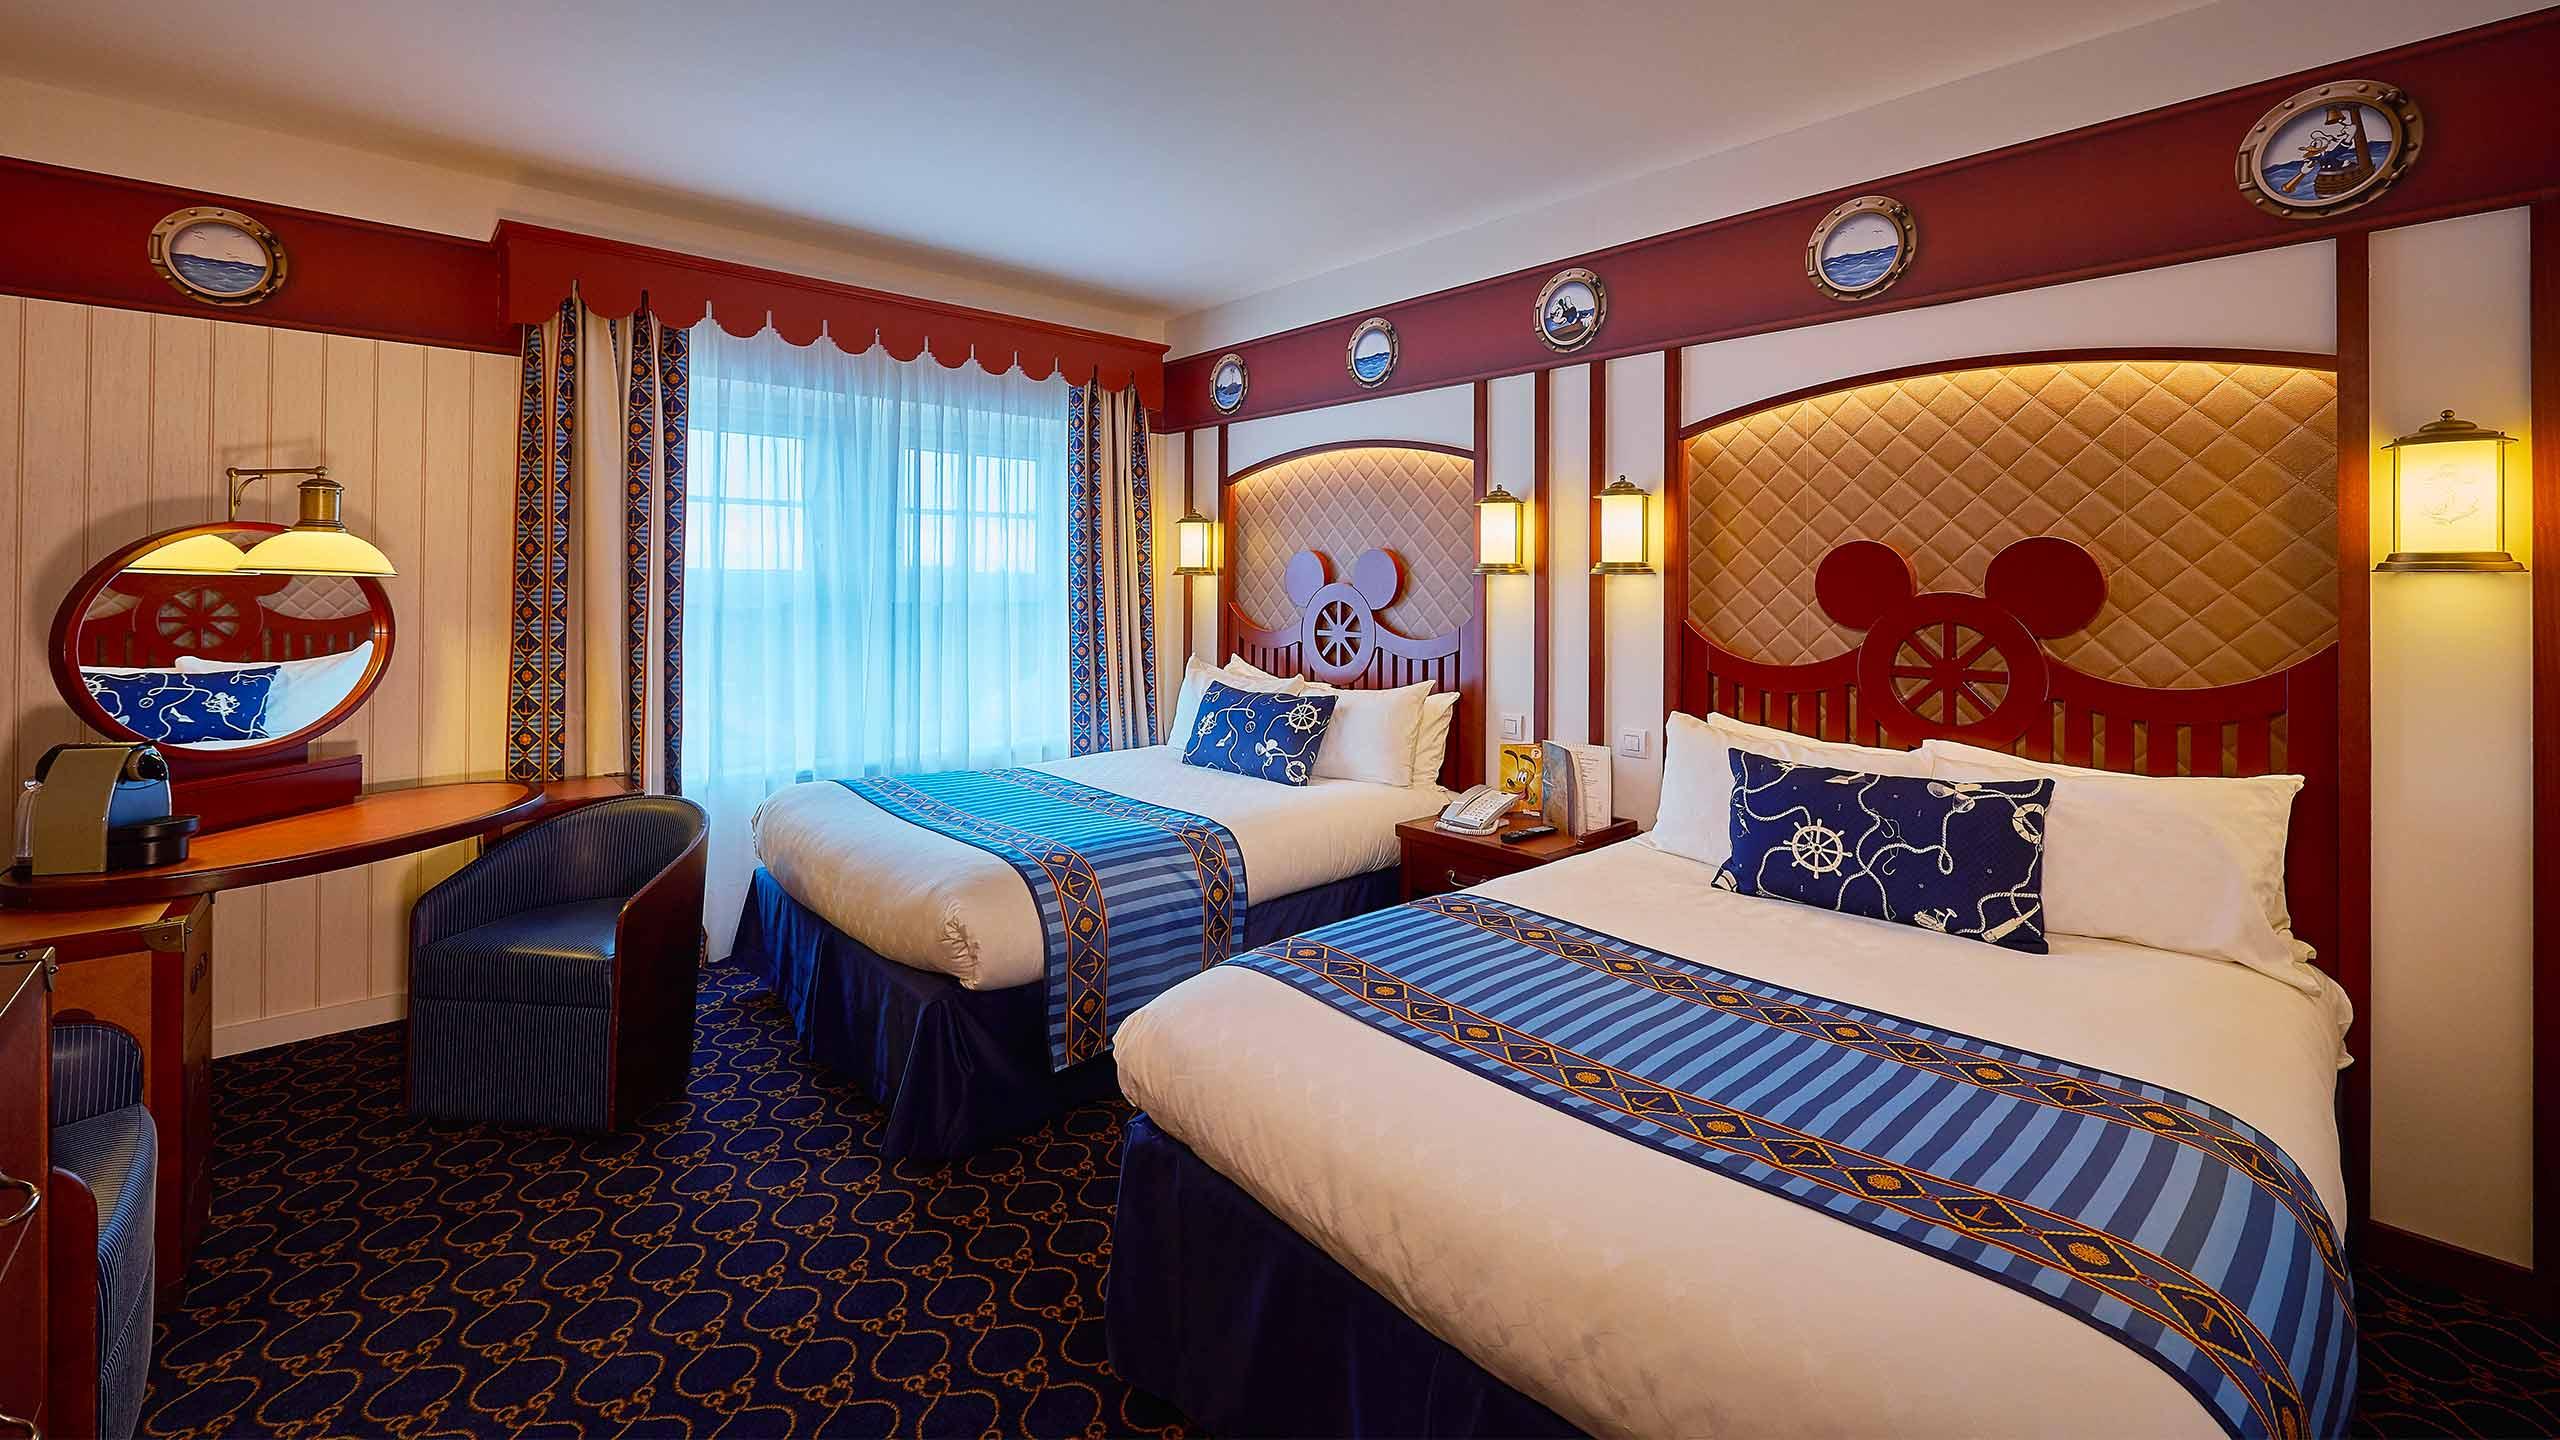 Club Zimmer, Suiten und die Compass Club Lounge mit allem Luxus für Kapitäne